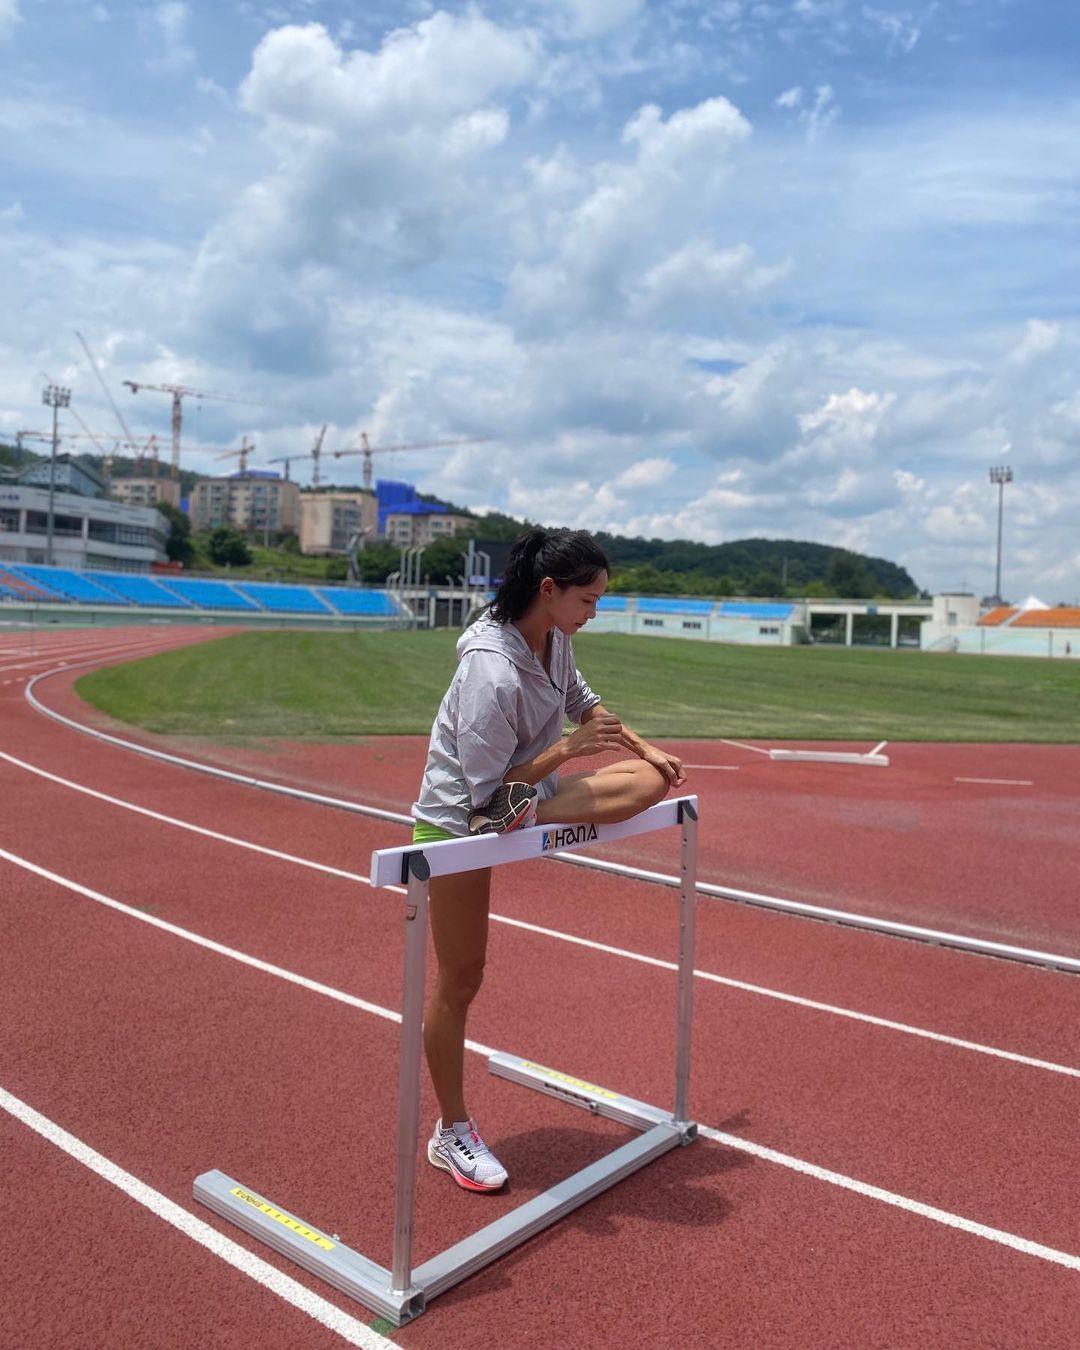 여신 육상 선수 김민지 인스타그램 셀카 사진